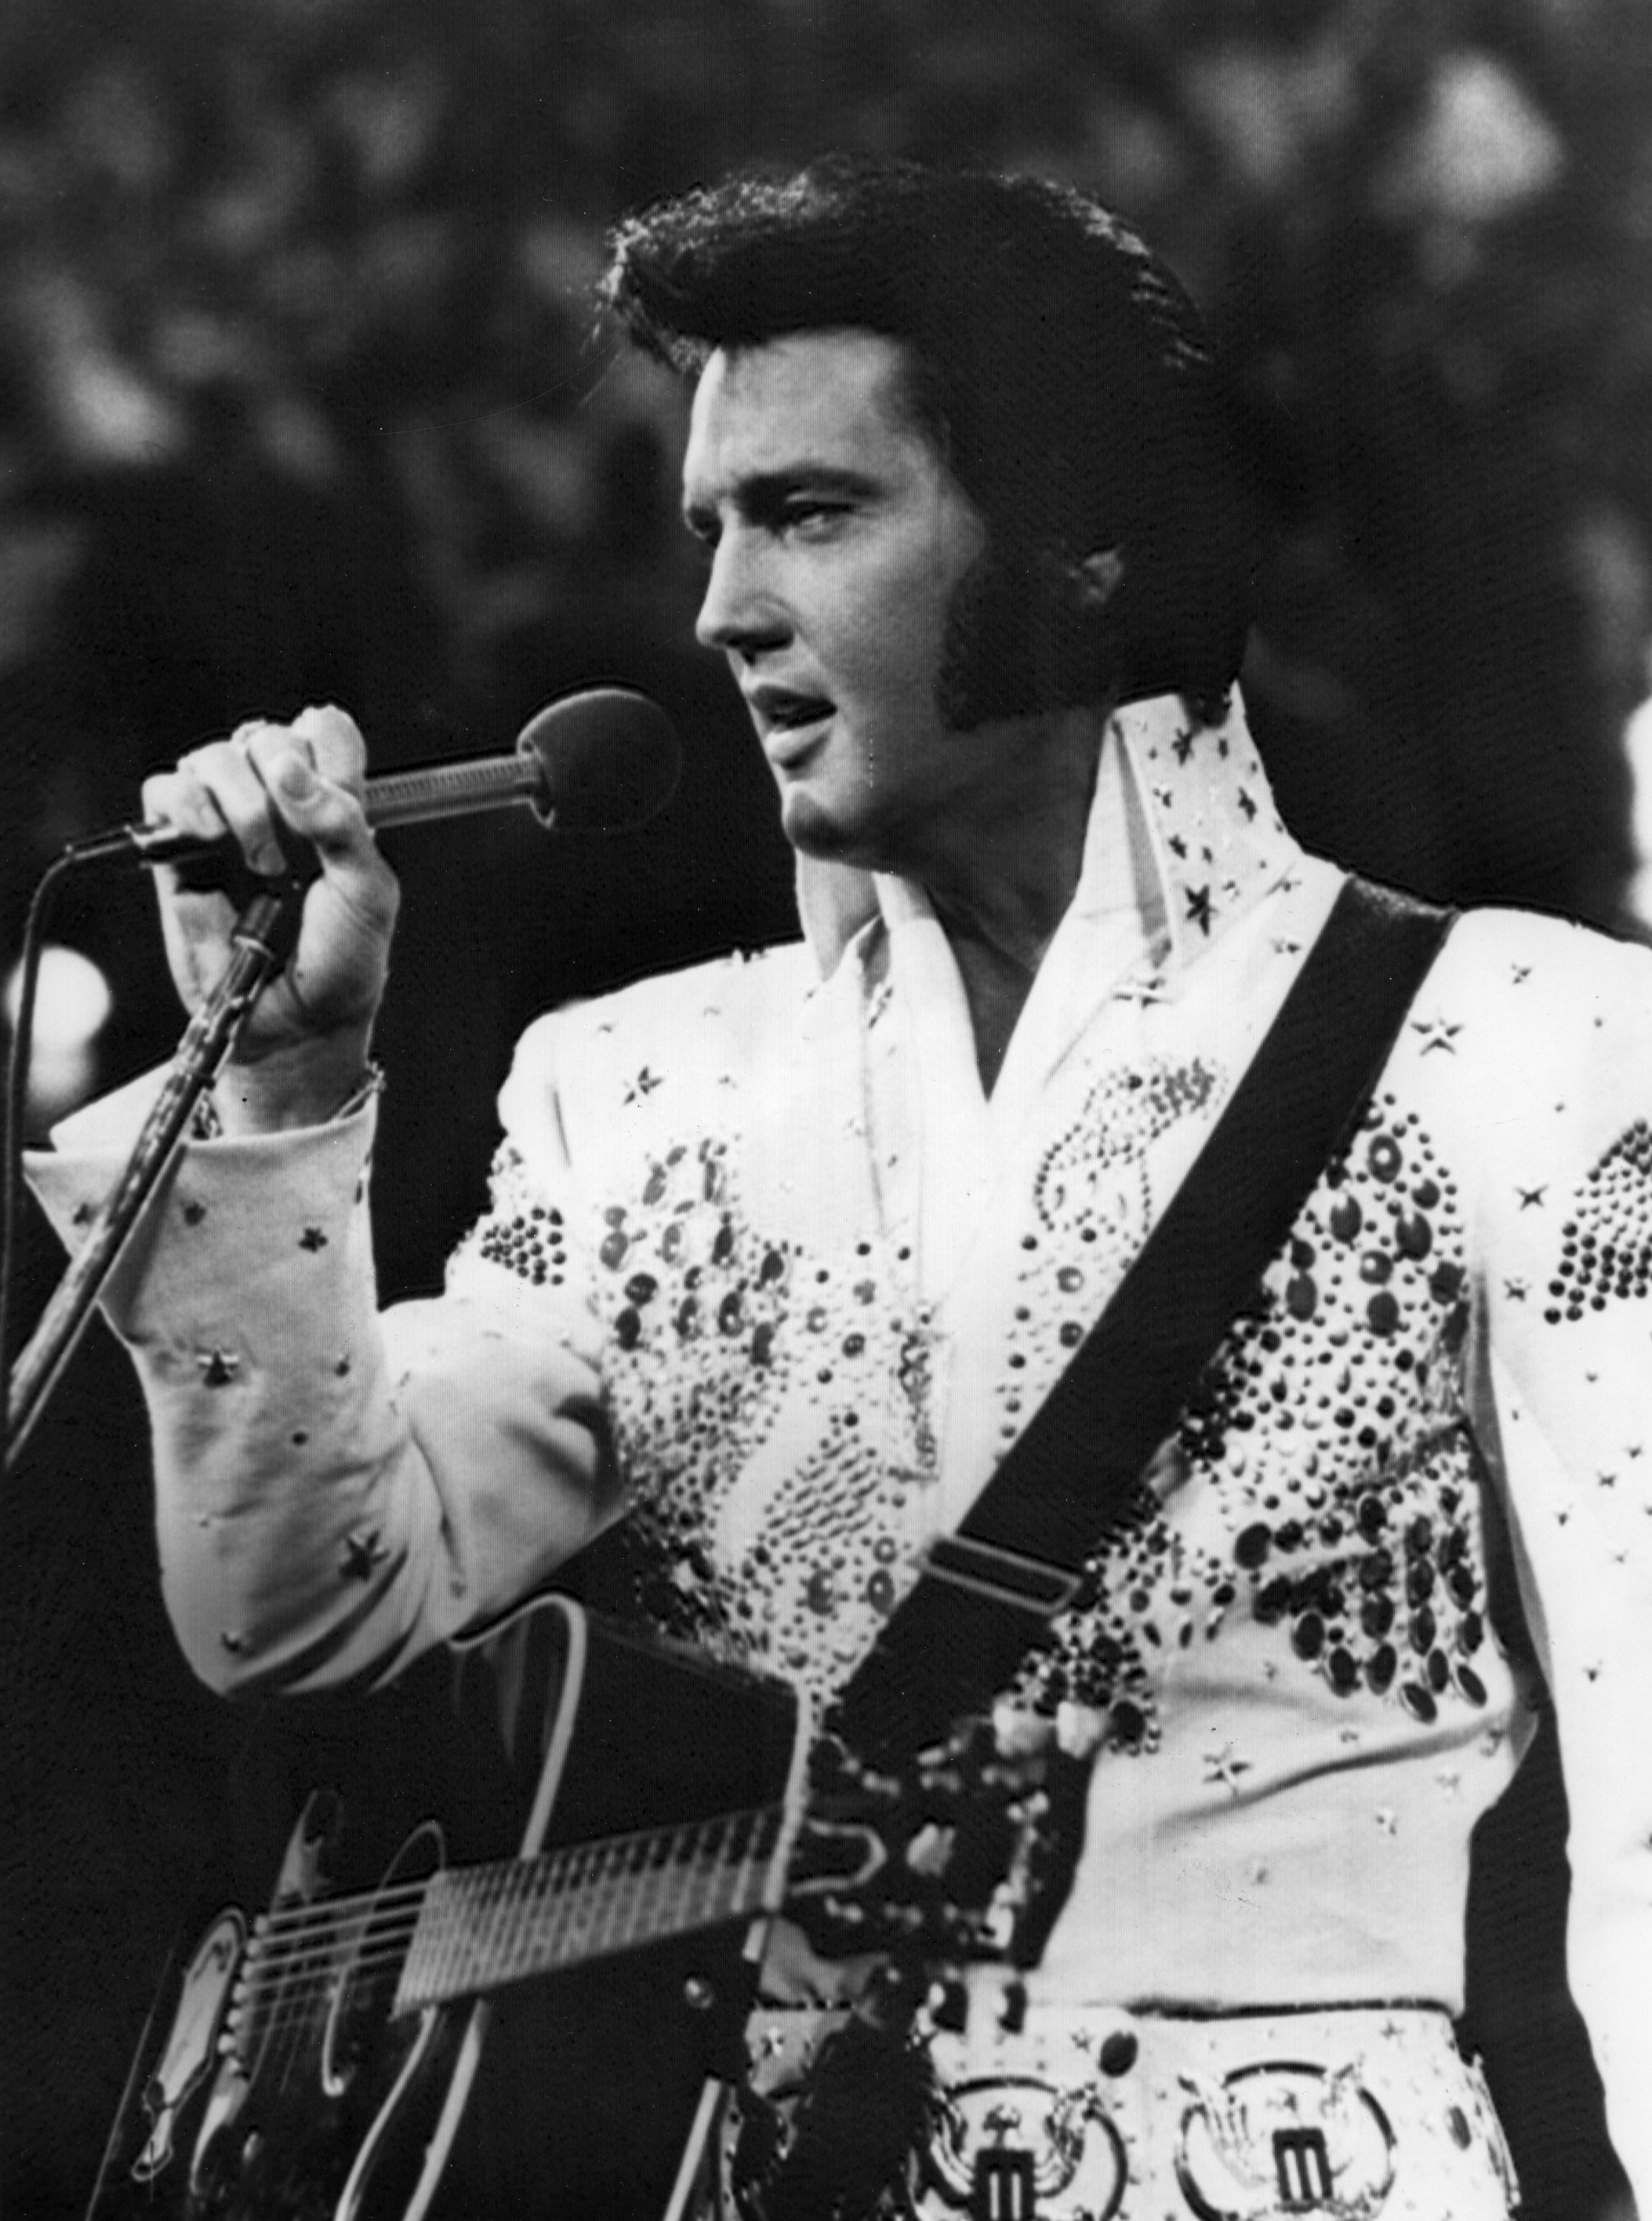 Memphis "ressuscita" Elvis quaranta anys després